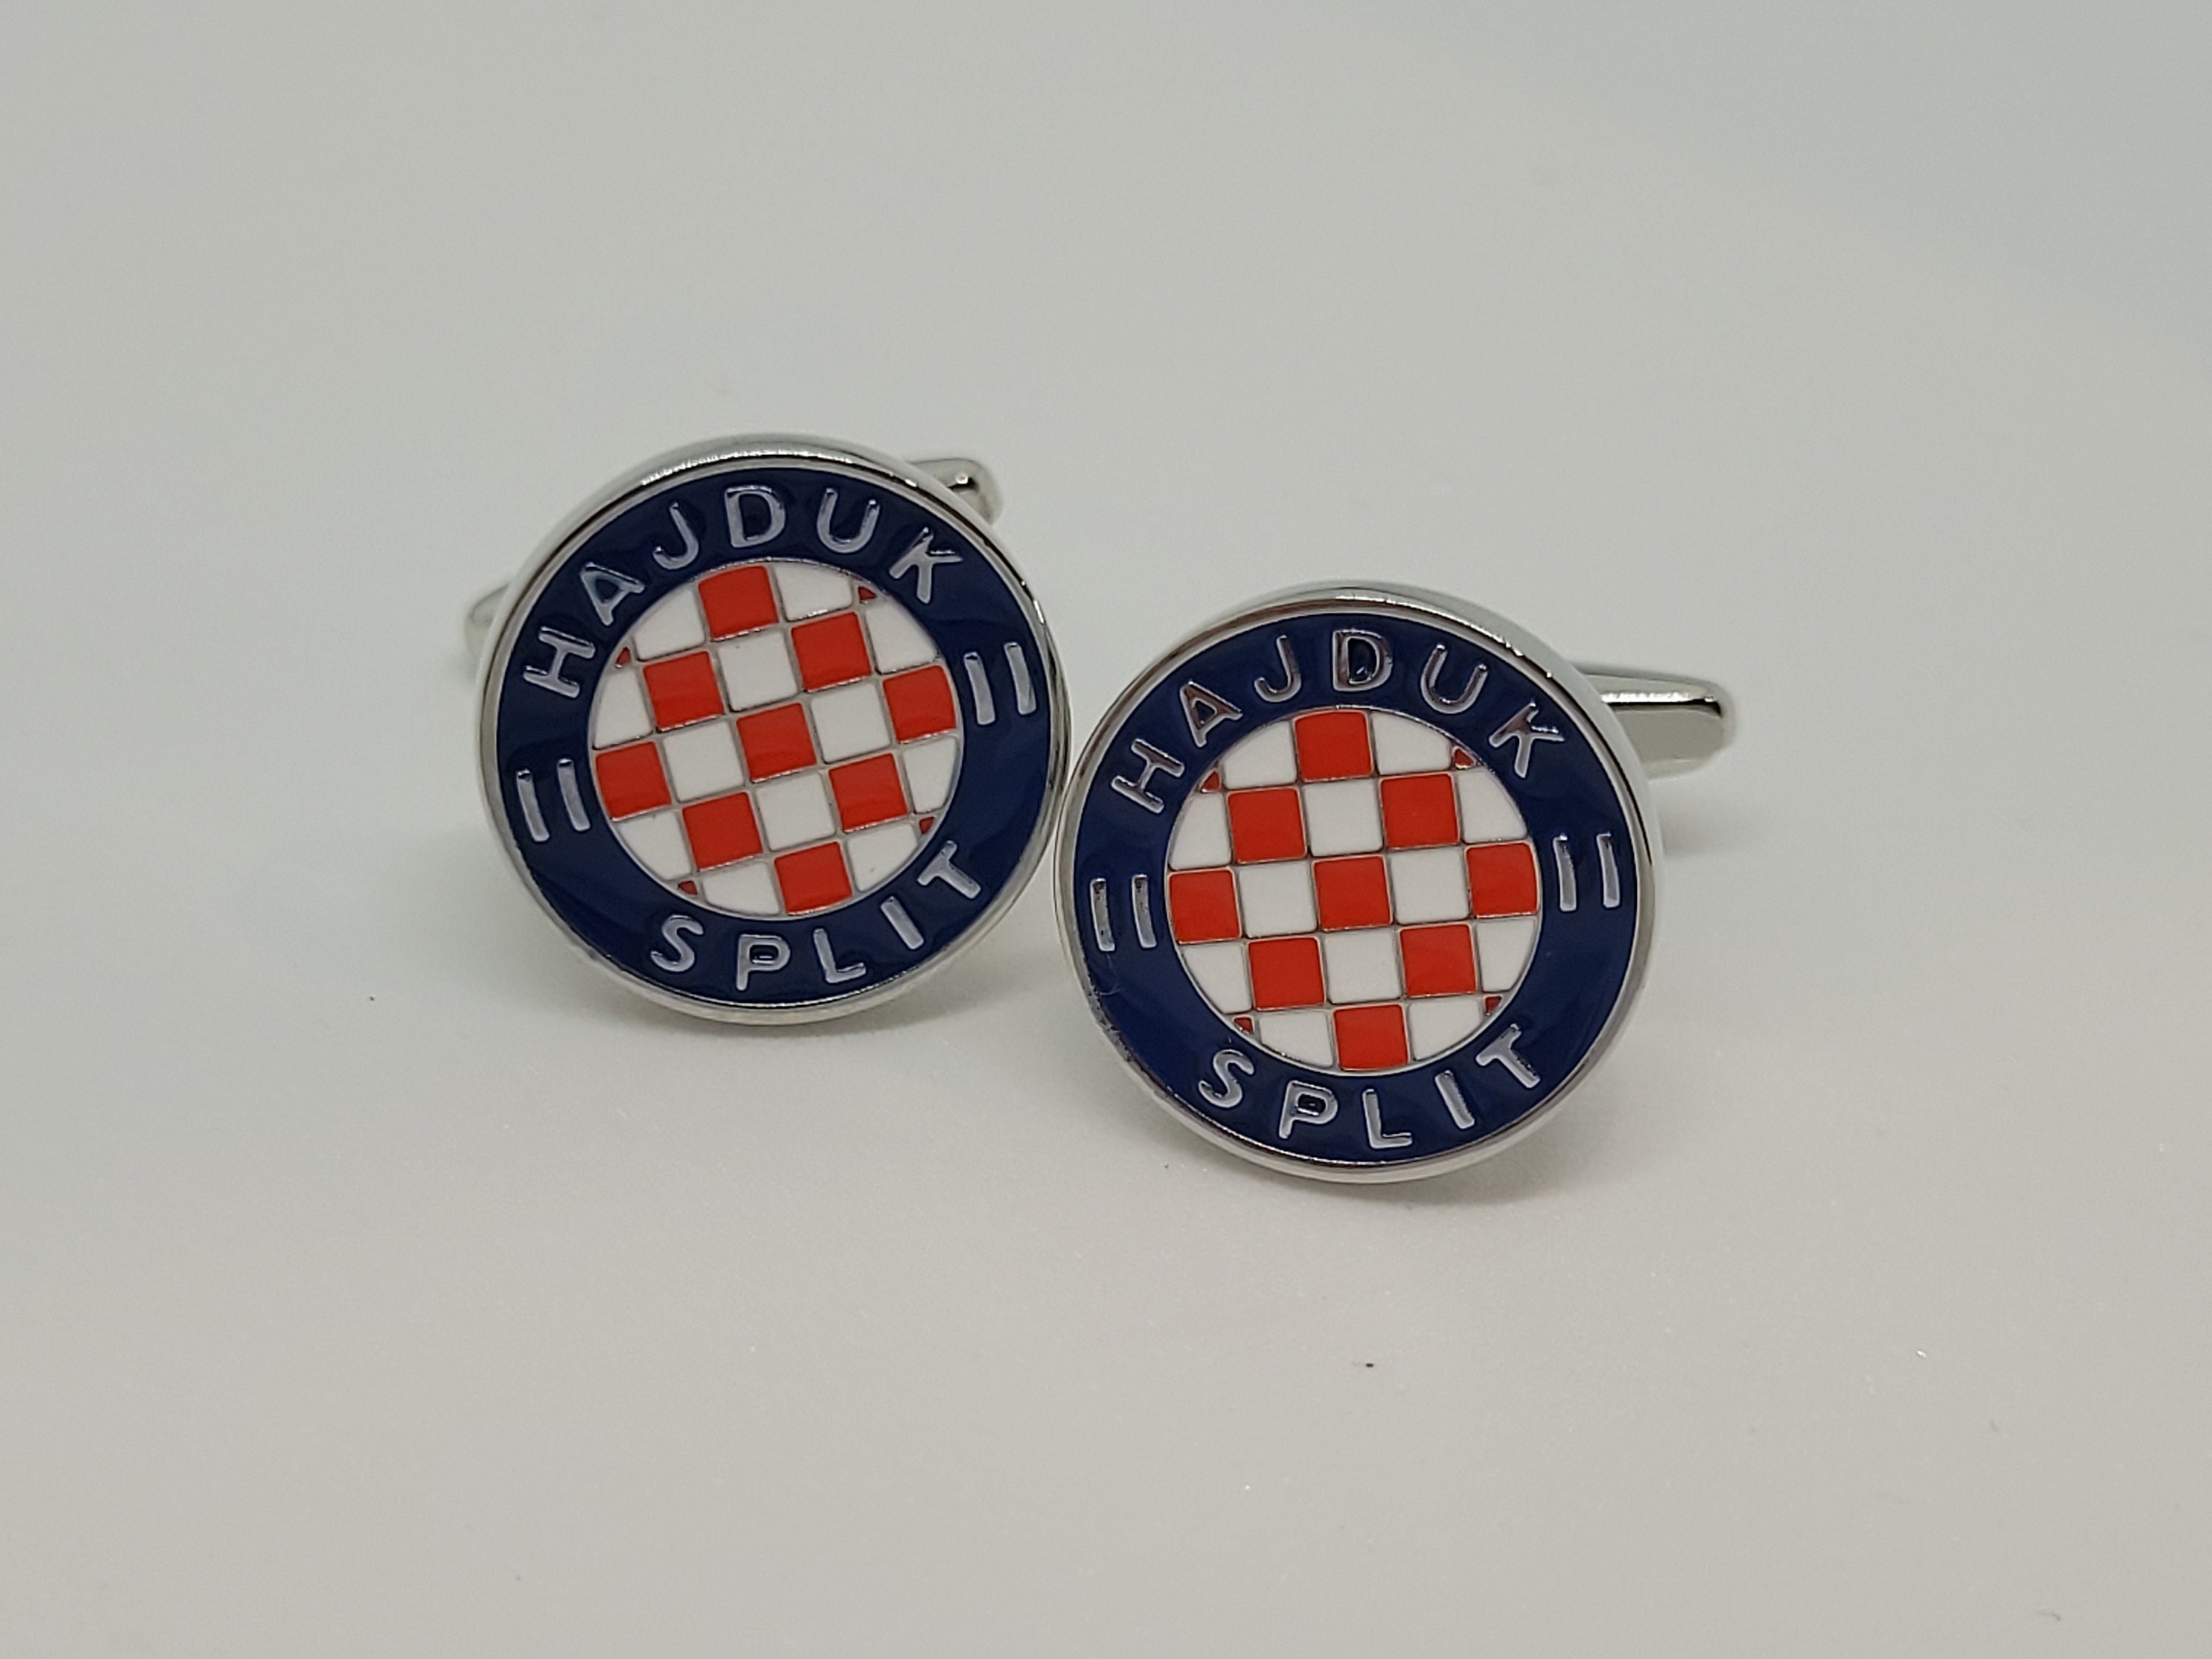 Hnk Hajduk Split Dresses for Sale